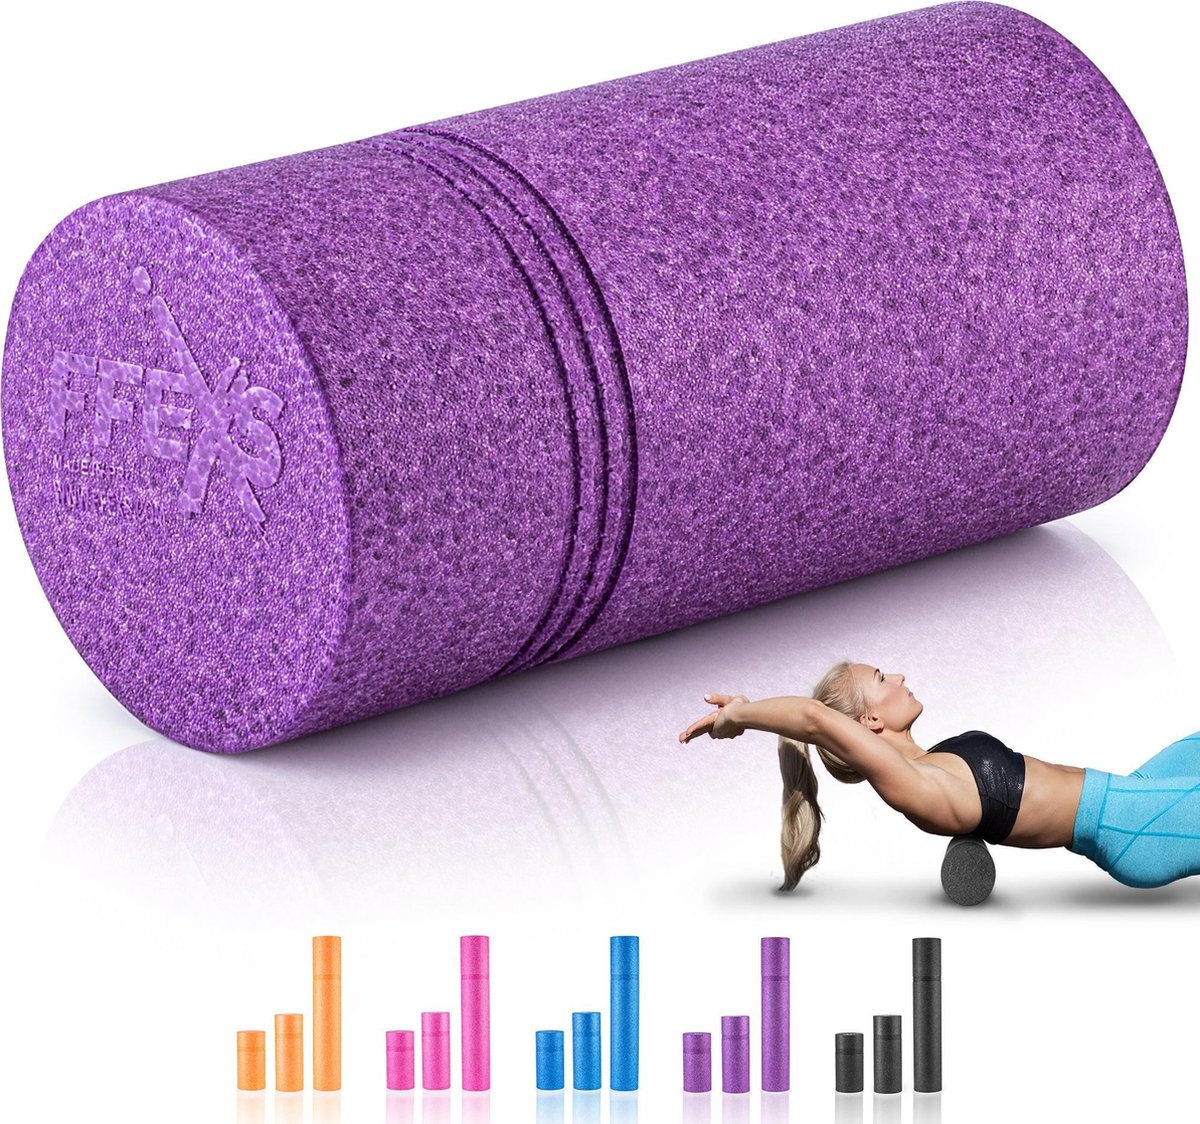 FFEXS Foam Roller - Therapie & Massage voor rug benen kuiten billen dijen - Perfecte zelfmassage voor sport fitness [Hard] - 30 CM - Paars